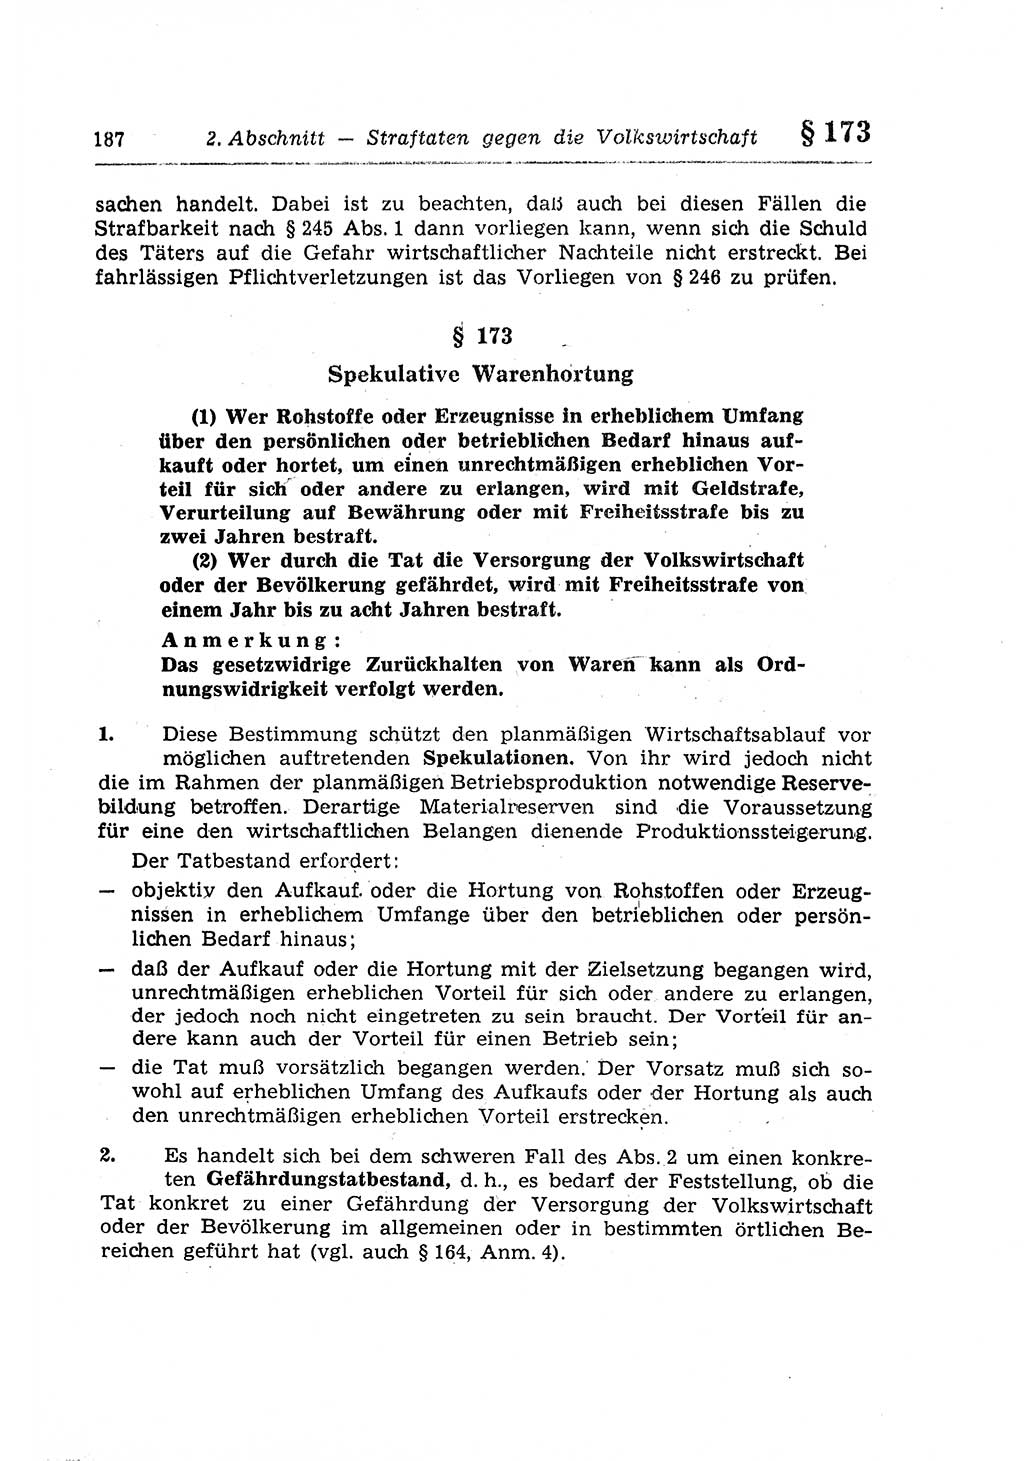 Strafrecht der Deutschen Demokratischen Republik (DDR), Lehrkommentar zum Strafgesetzbuch (StGB), Besonderer Teil 1970, Seite 187 (Strafr. DDR Lehrkomm. StGB BT 1970, S. 187)